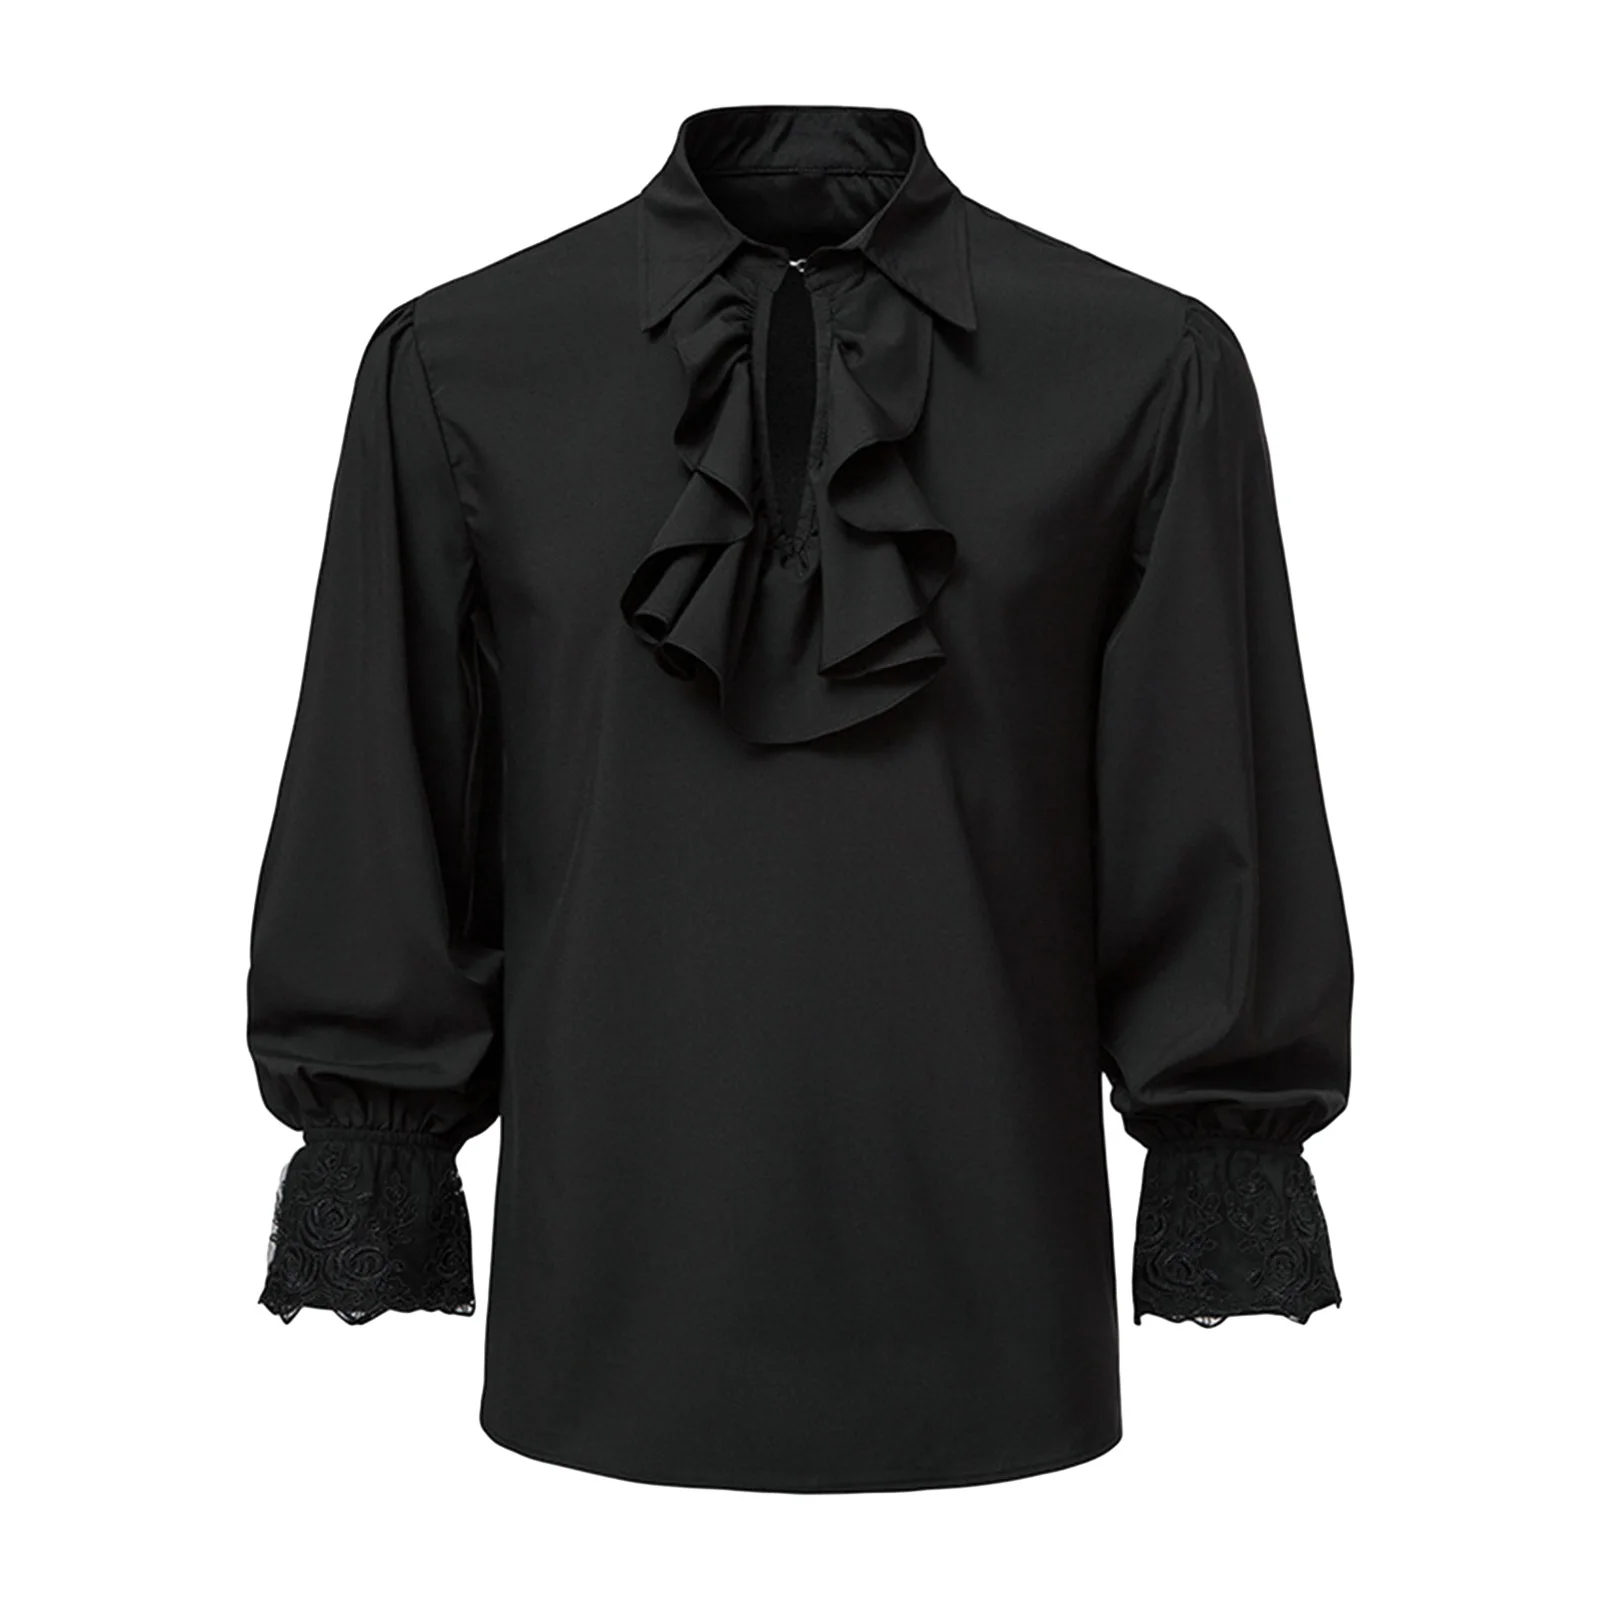 Аристократический костюм для косплея Пиратская рубашка эпохи Возрождения Мужская рубашка в стиле стимпанк Ретро Средневековая готика Мужская рубашка с кружевным воротником-стойкой с оборками